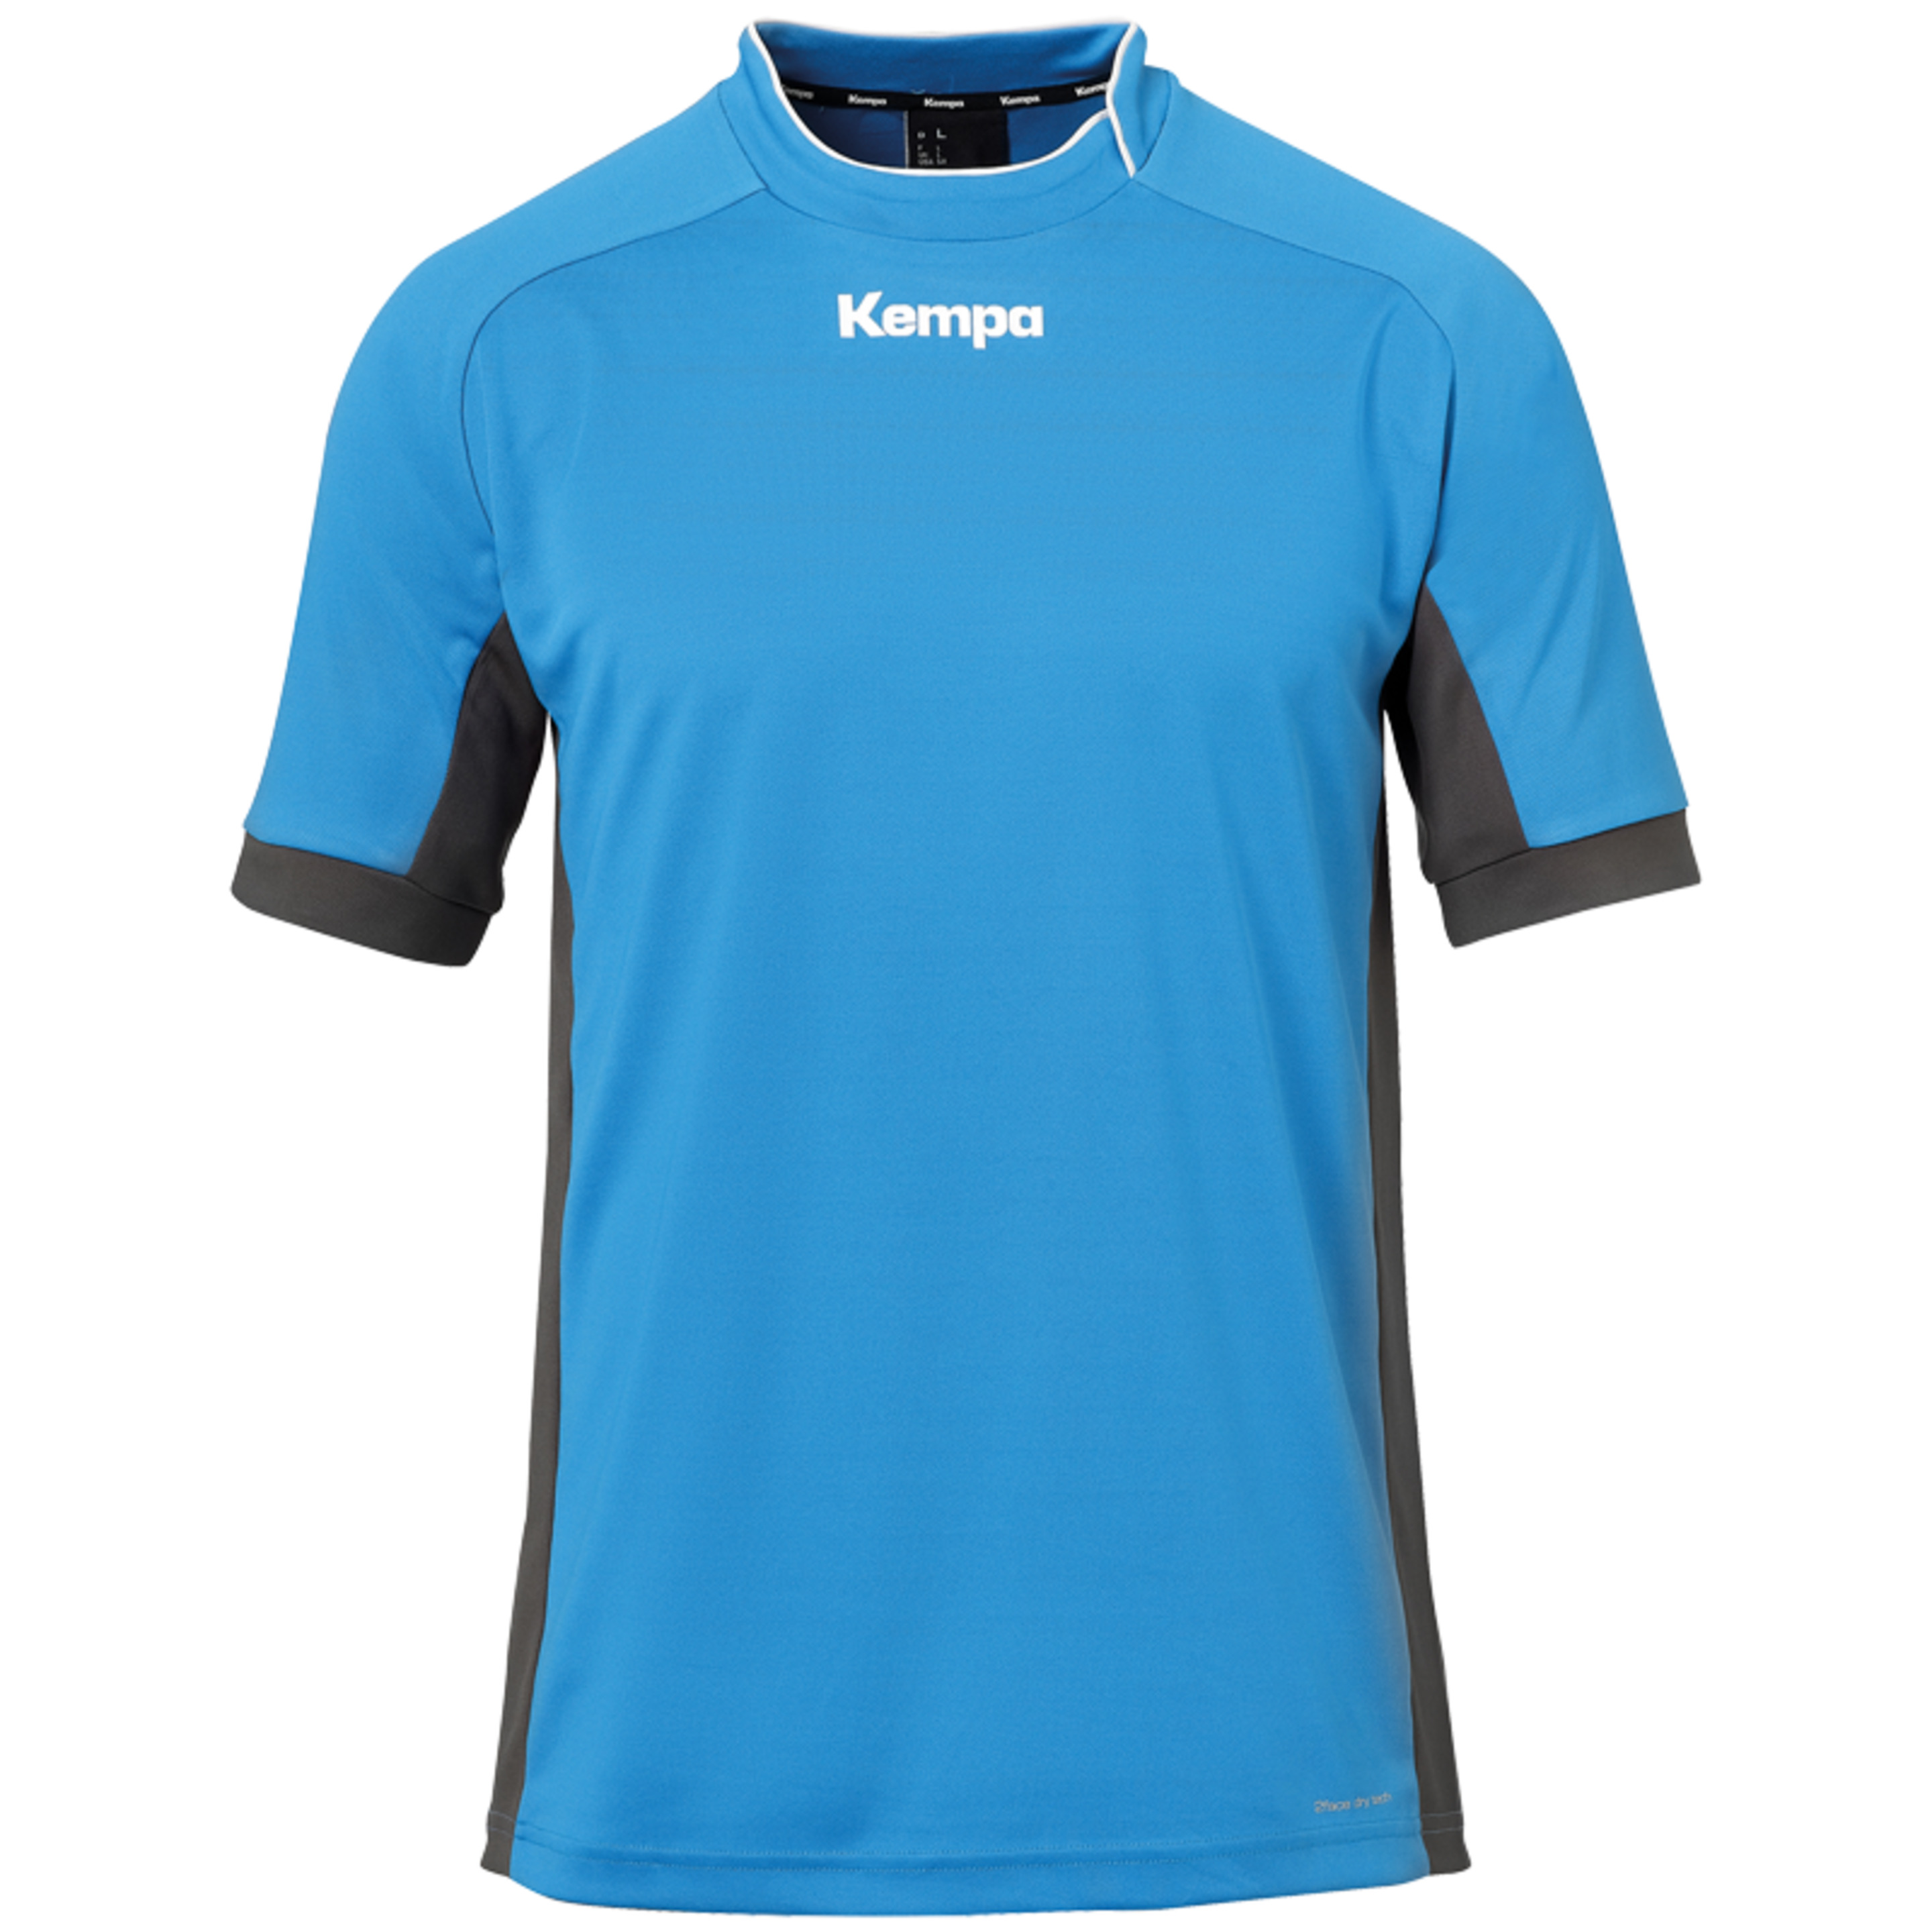 Prime Shirt Kempa Azul/antracita Kempa - azul - 